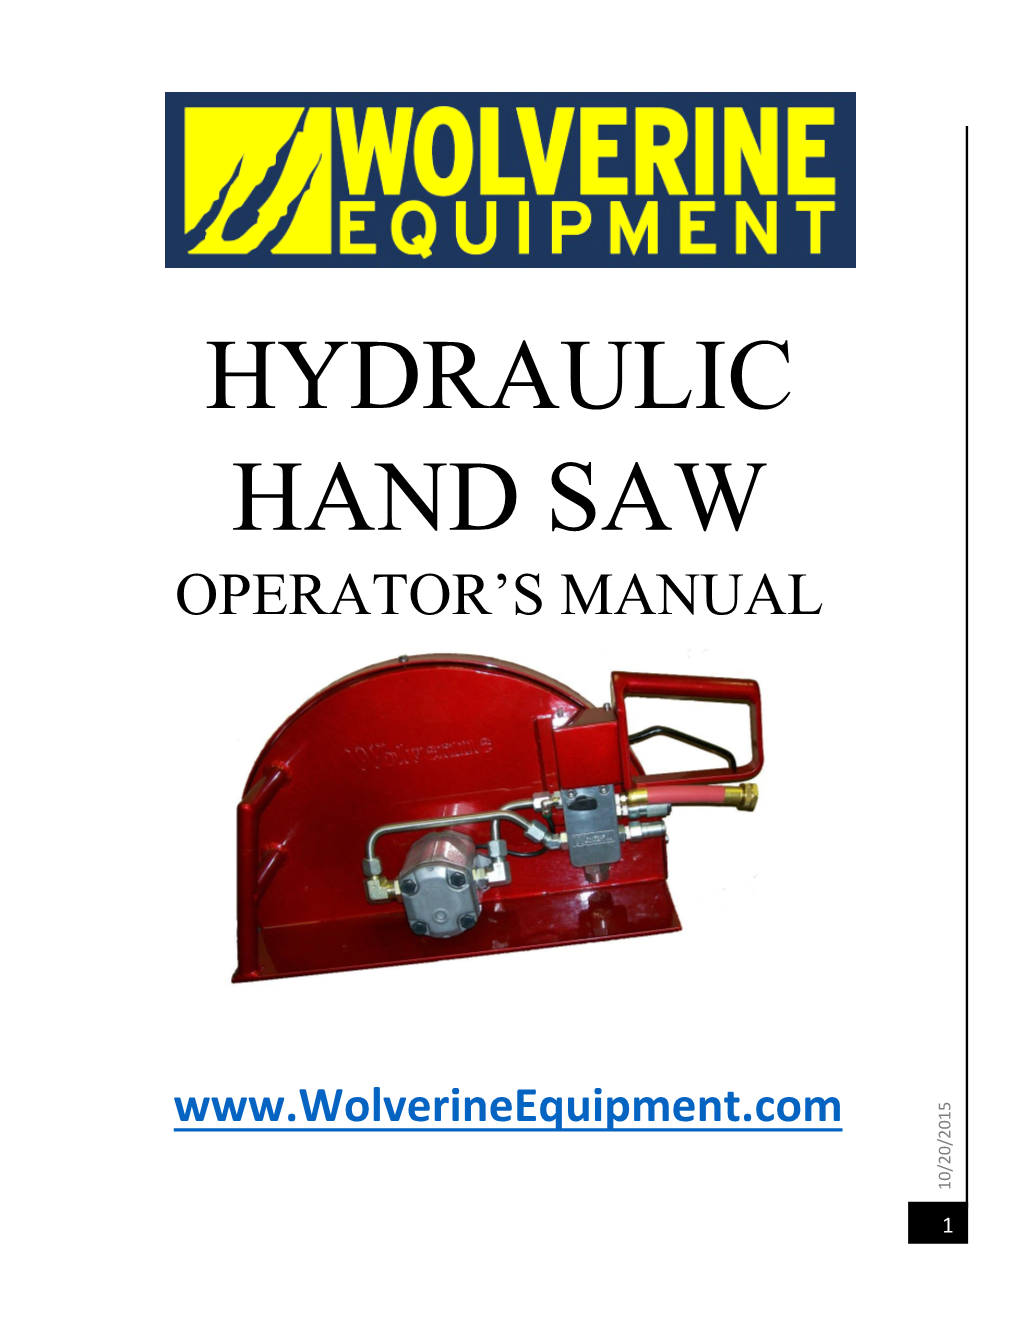 Hydraulic Hand Saw Hand Saw